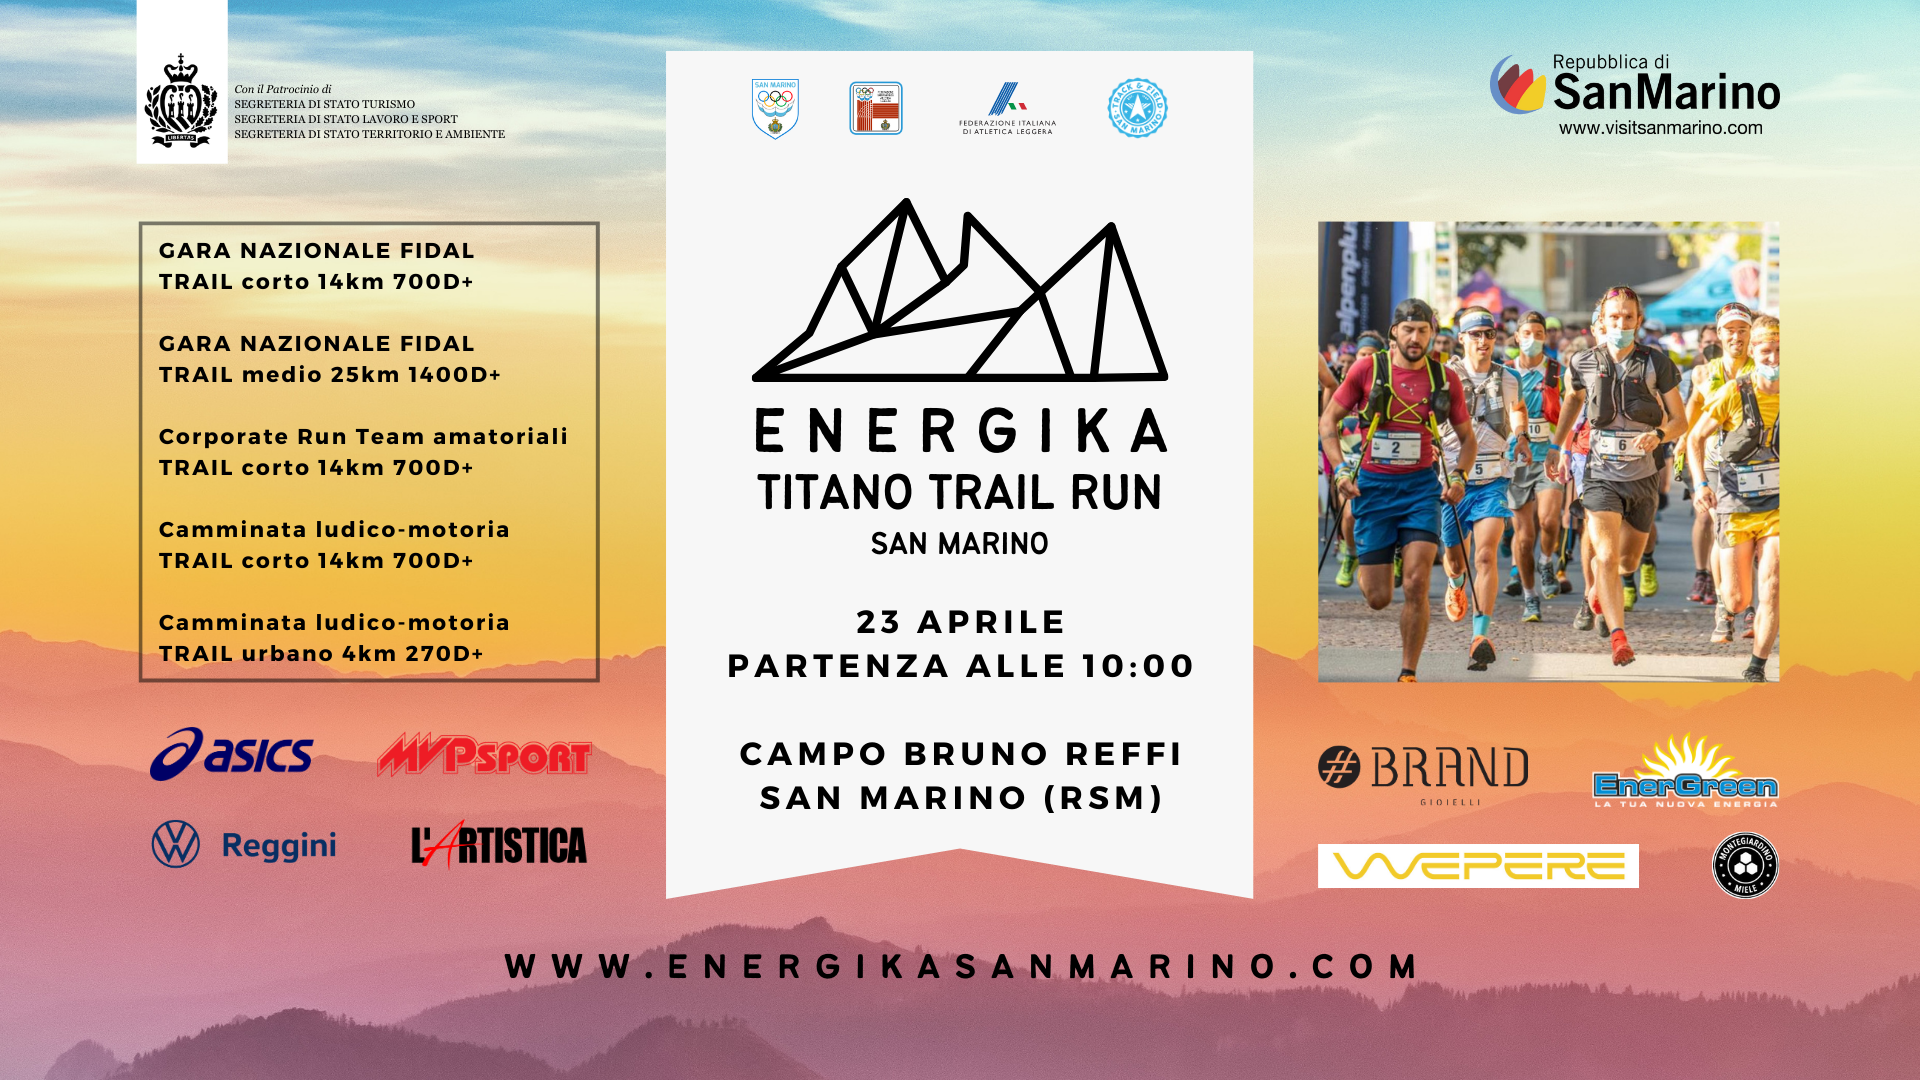 Questo weekend c’è Energika, il primo festival degli sport outdoor a San Marino